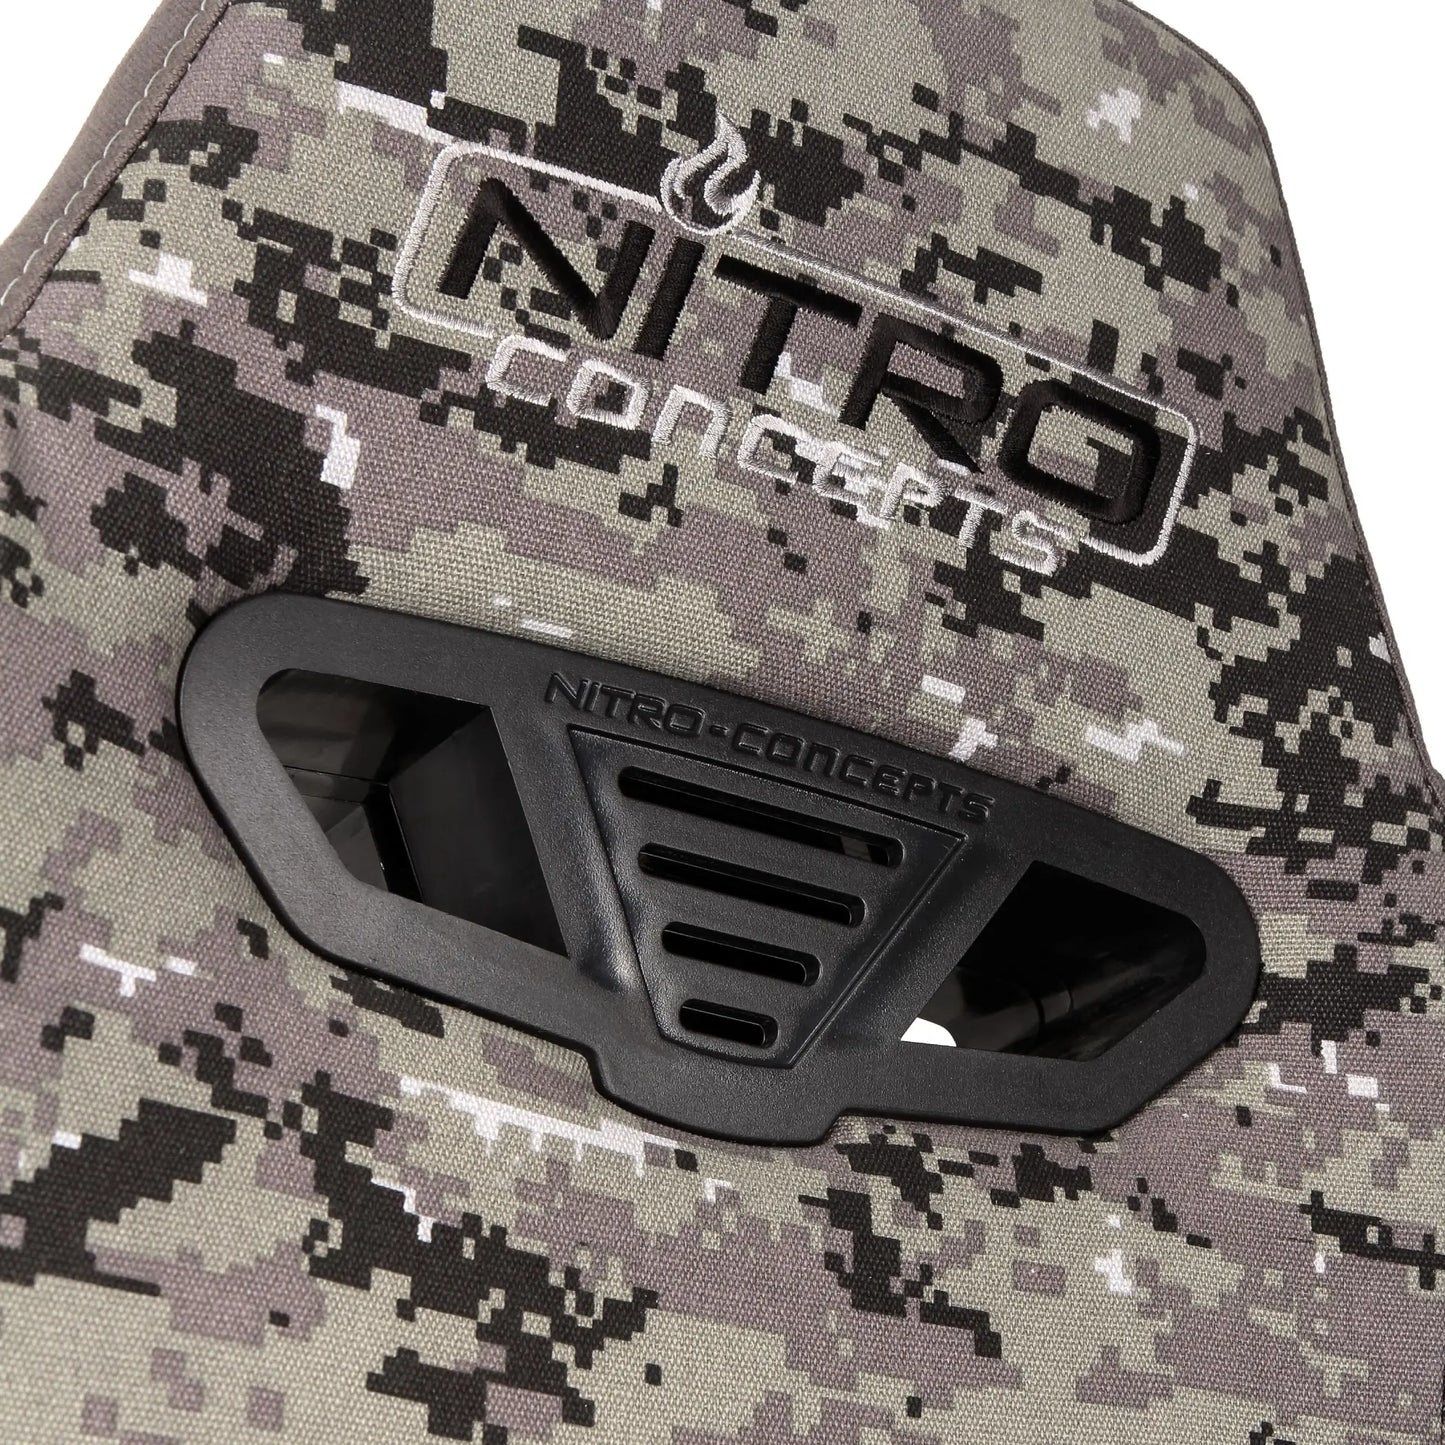 Nitro Concepts S300 PRO - DIGITAL CAMO